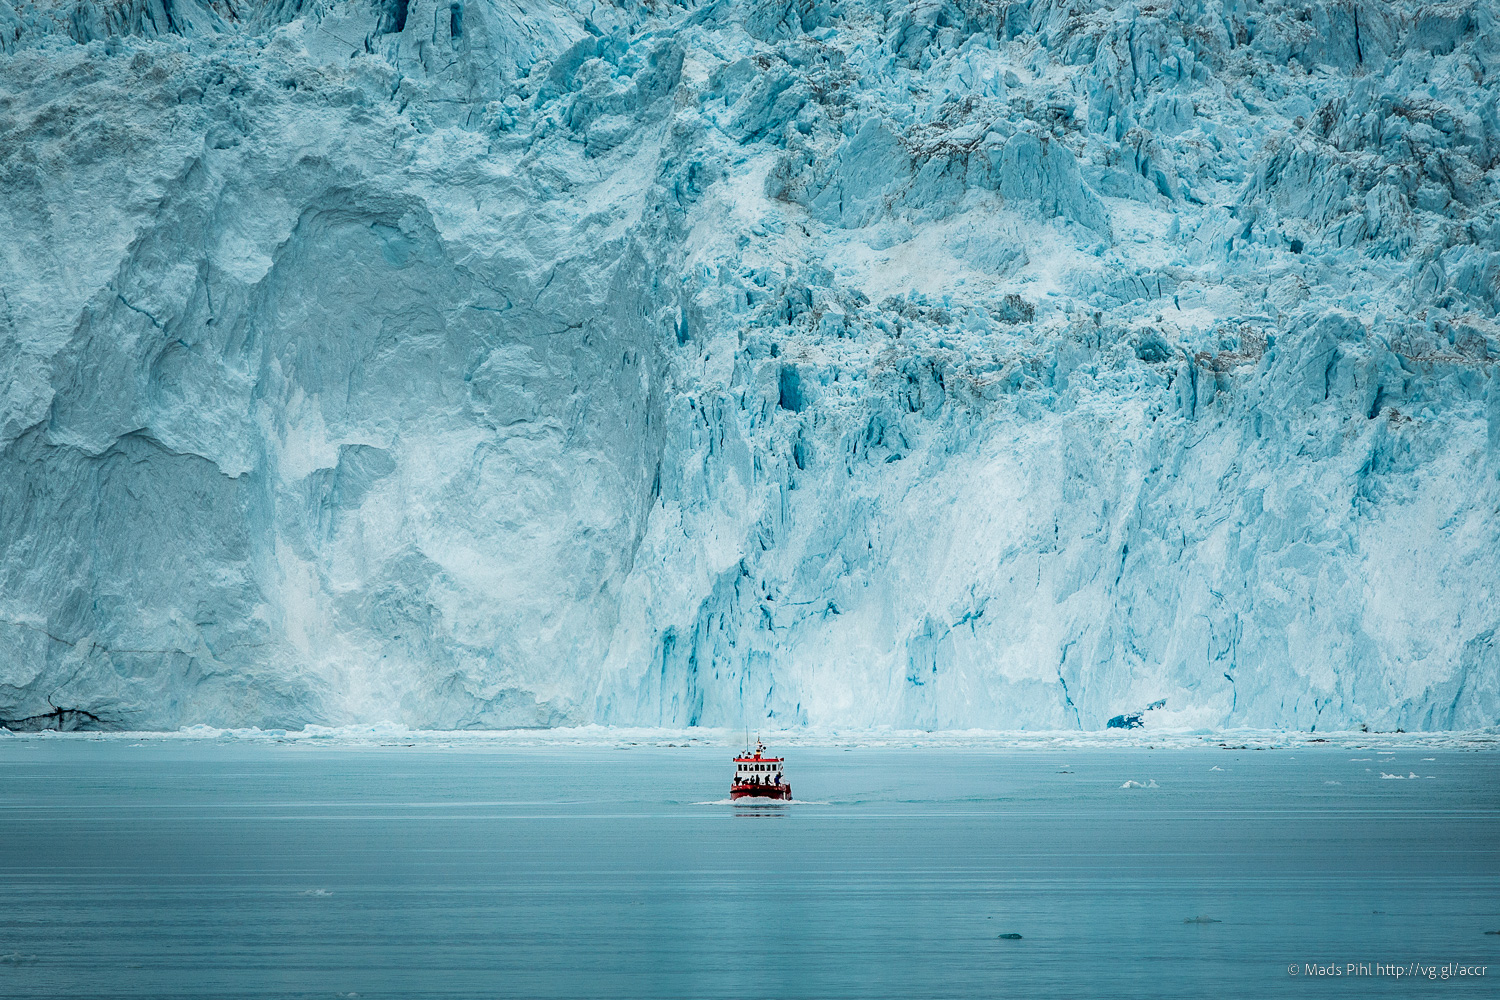 Bootsfahrt zum Eqi Gletscher, Fotoreise Grönland